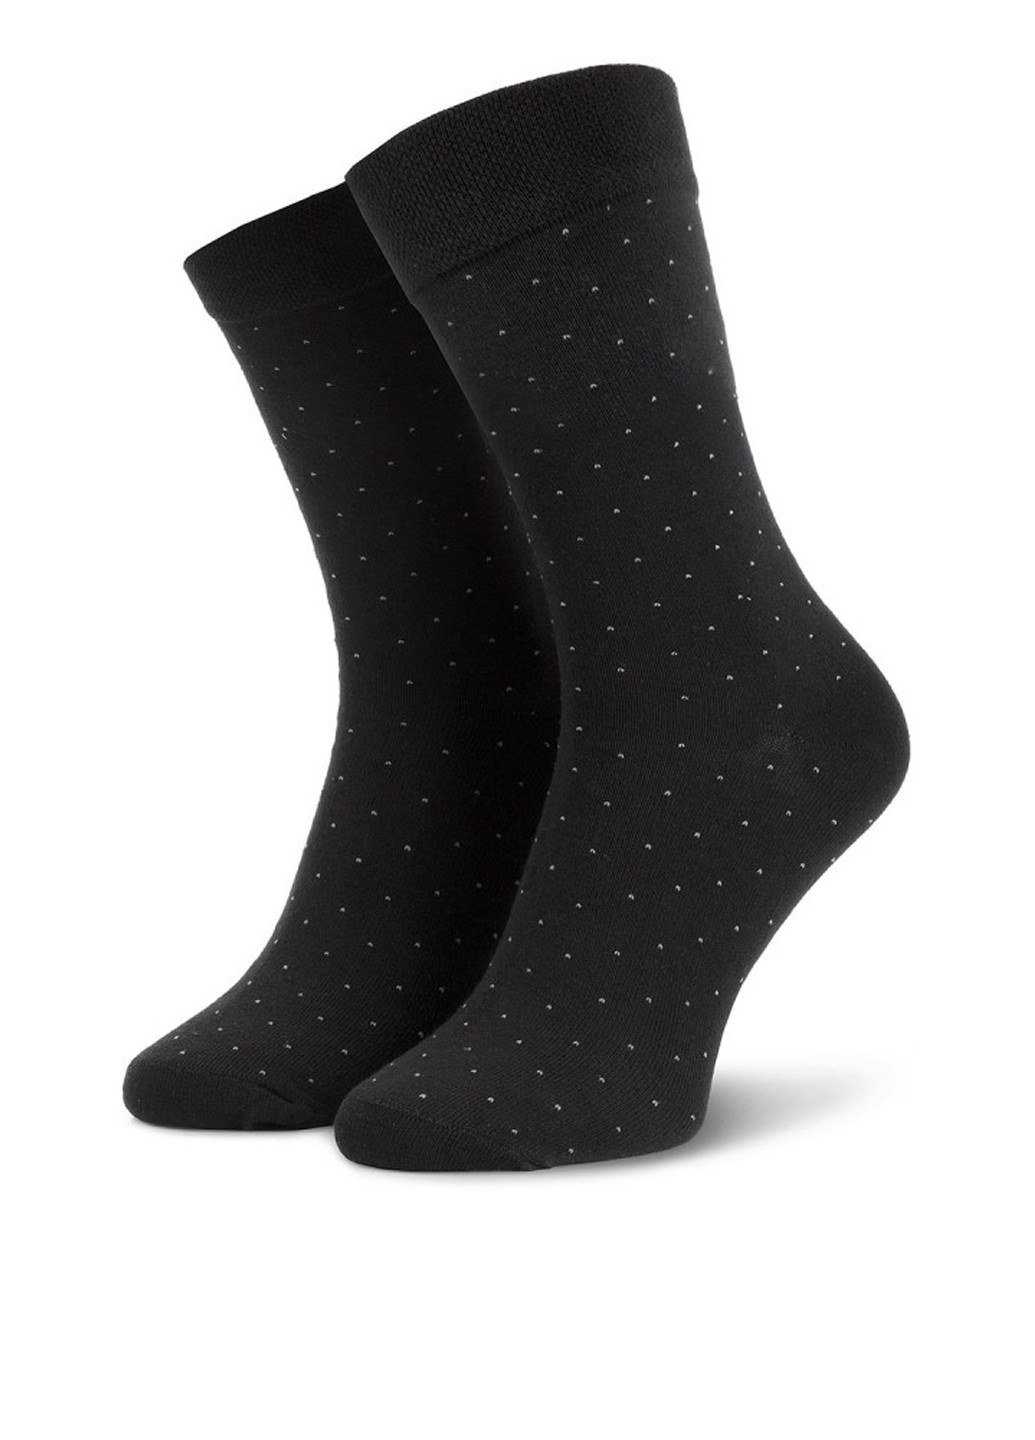 Шкарпетки чоловічі SKARPETY WIZYTOWE (KROPKI) 39-41 Lasocki SKARPETY WIZYTOWE (KROPKI горошки чёрные повседневные